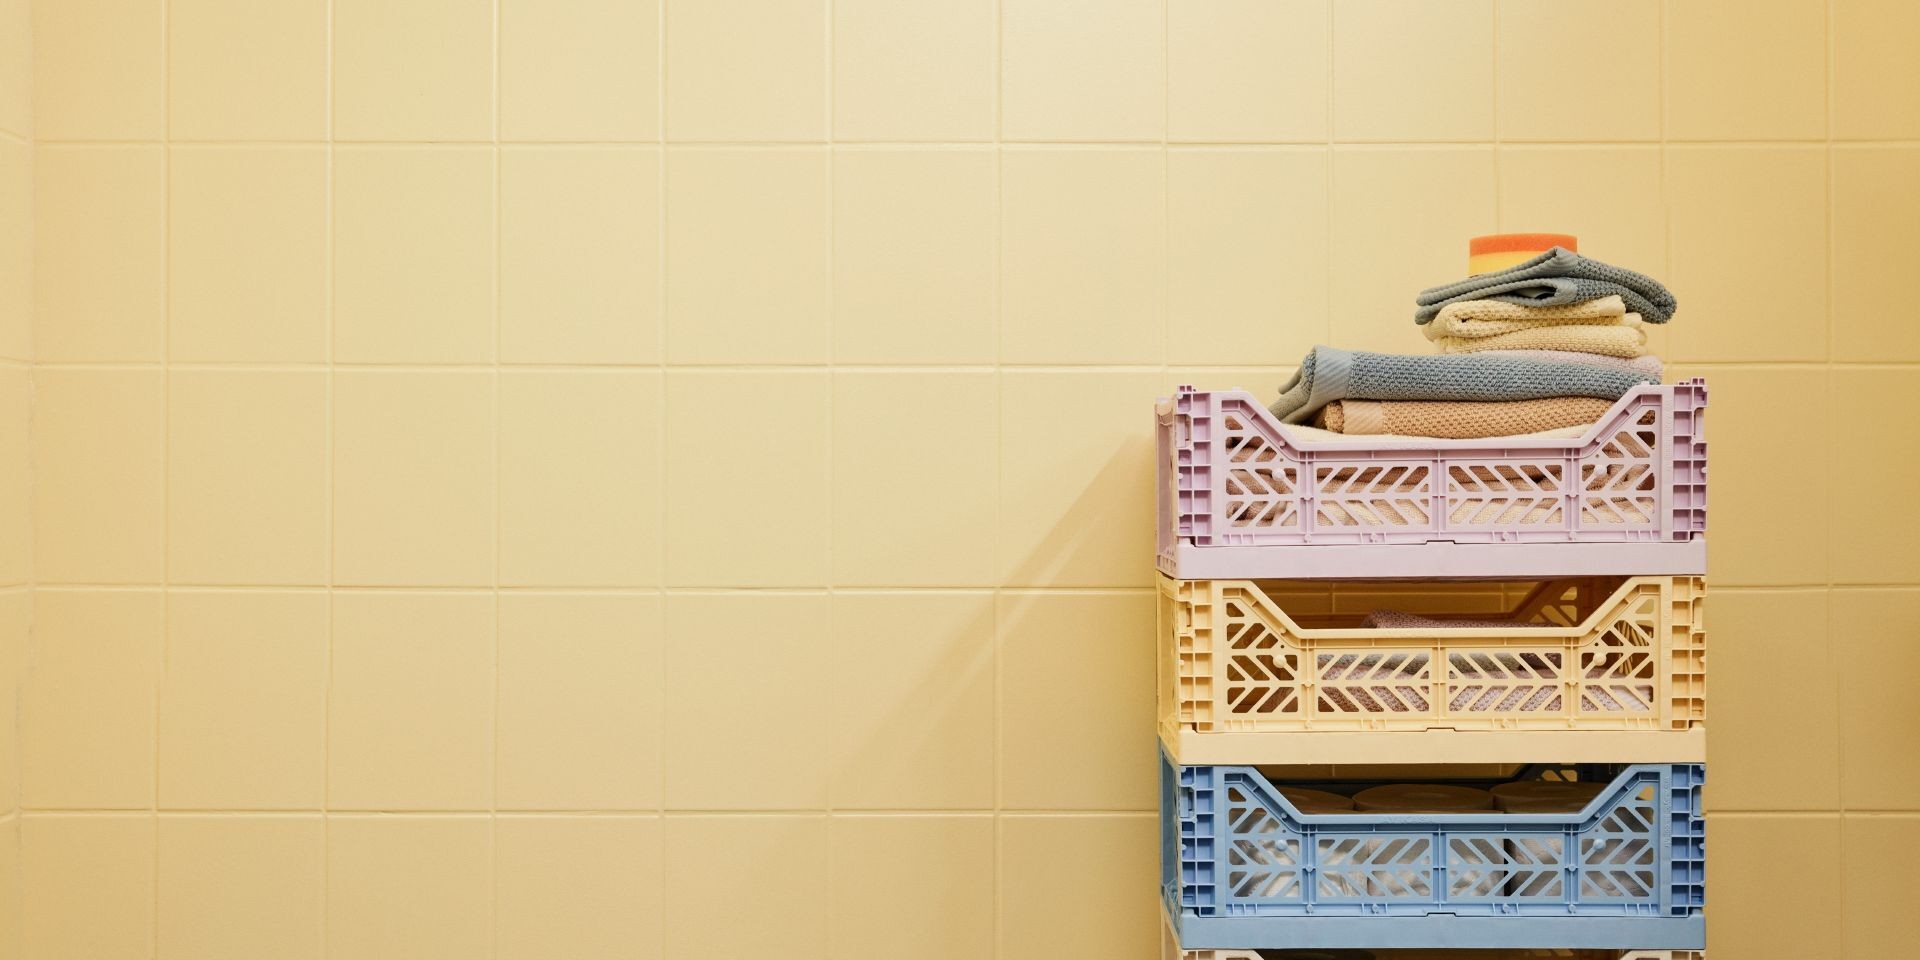 Kylpyhuoneen kaakelit, jotka ovat maalattu keltaisella ja harmaalla värillä